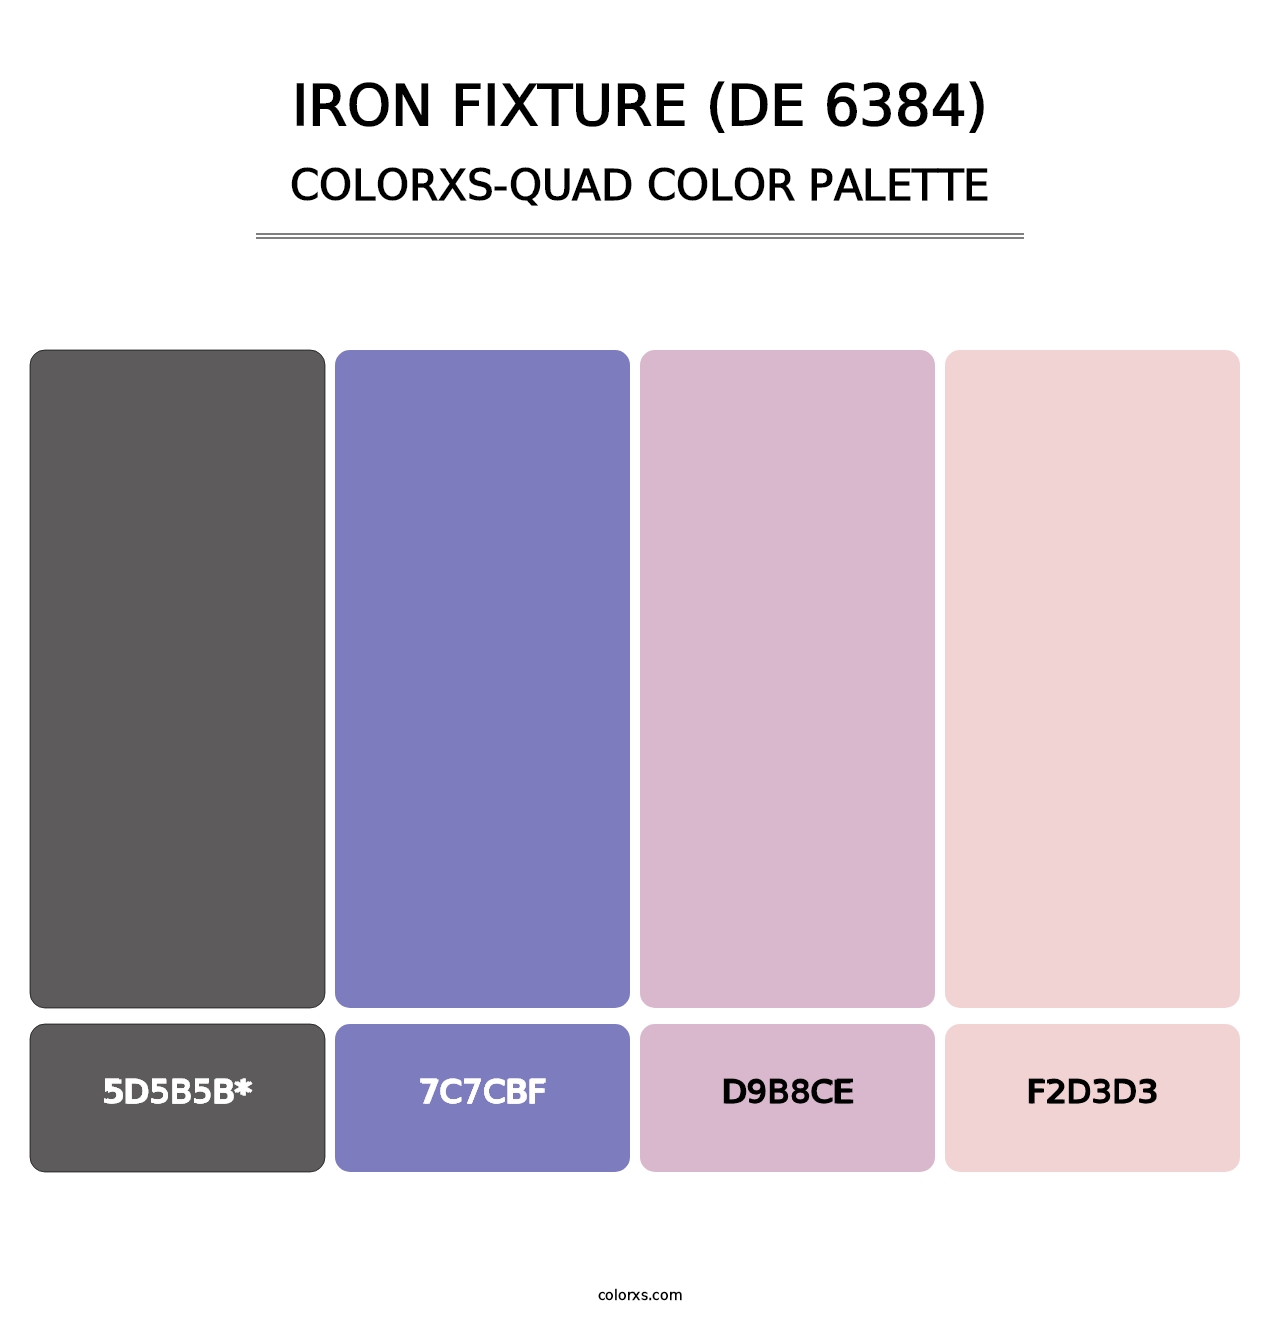 Iron Fixture (DE 6384) - Colorxs Quad Palette